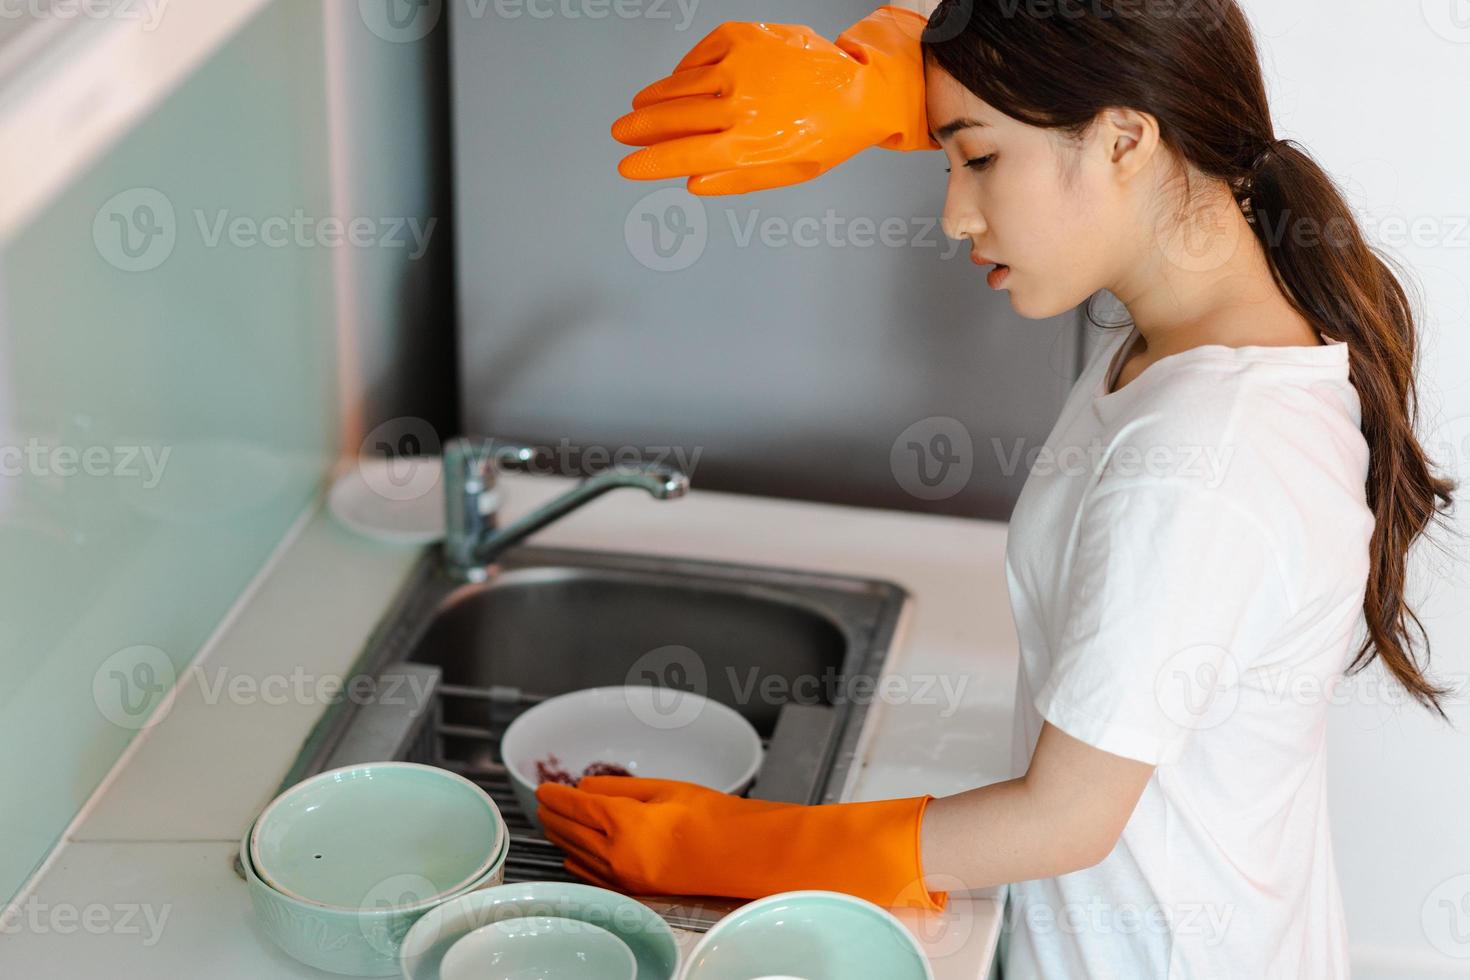 la mujer asiática está lavando platos en un estado de ánimo cansado foto